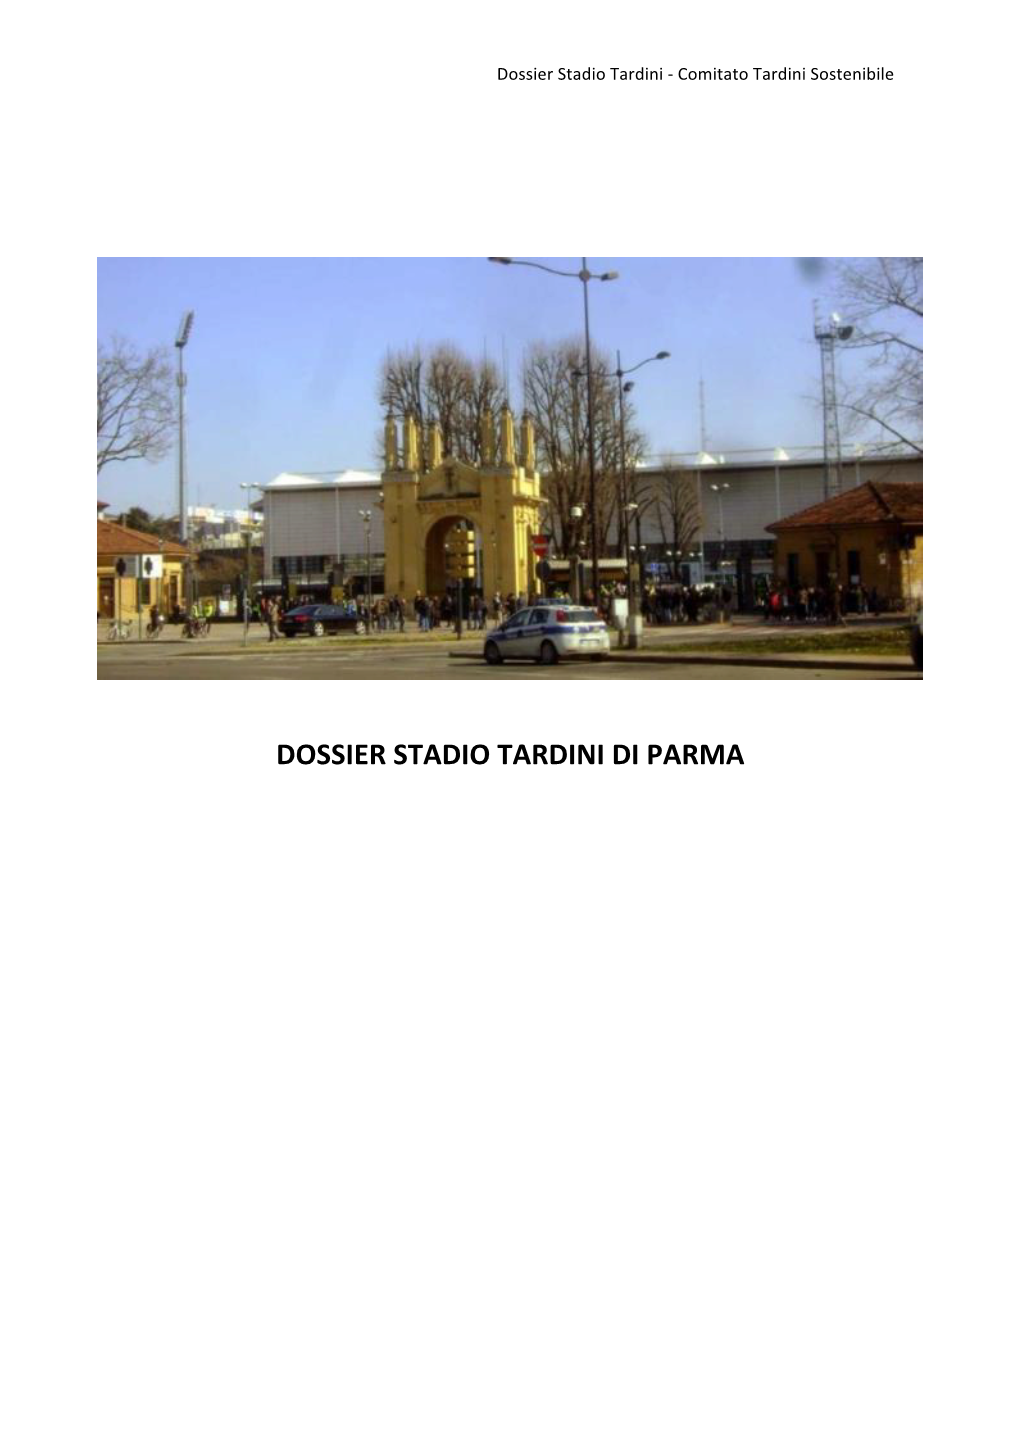 Tardini Dossier Riservato 12 5 21